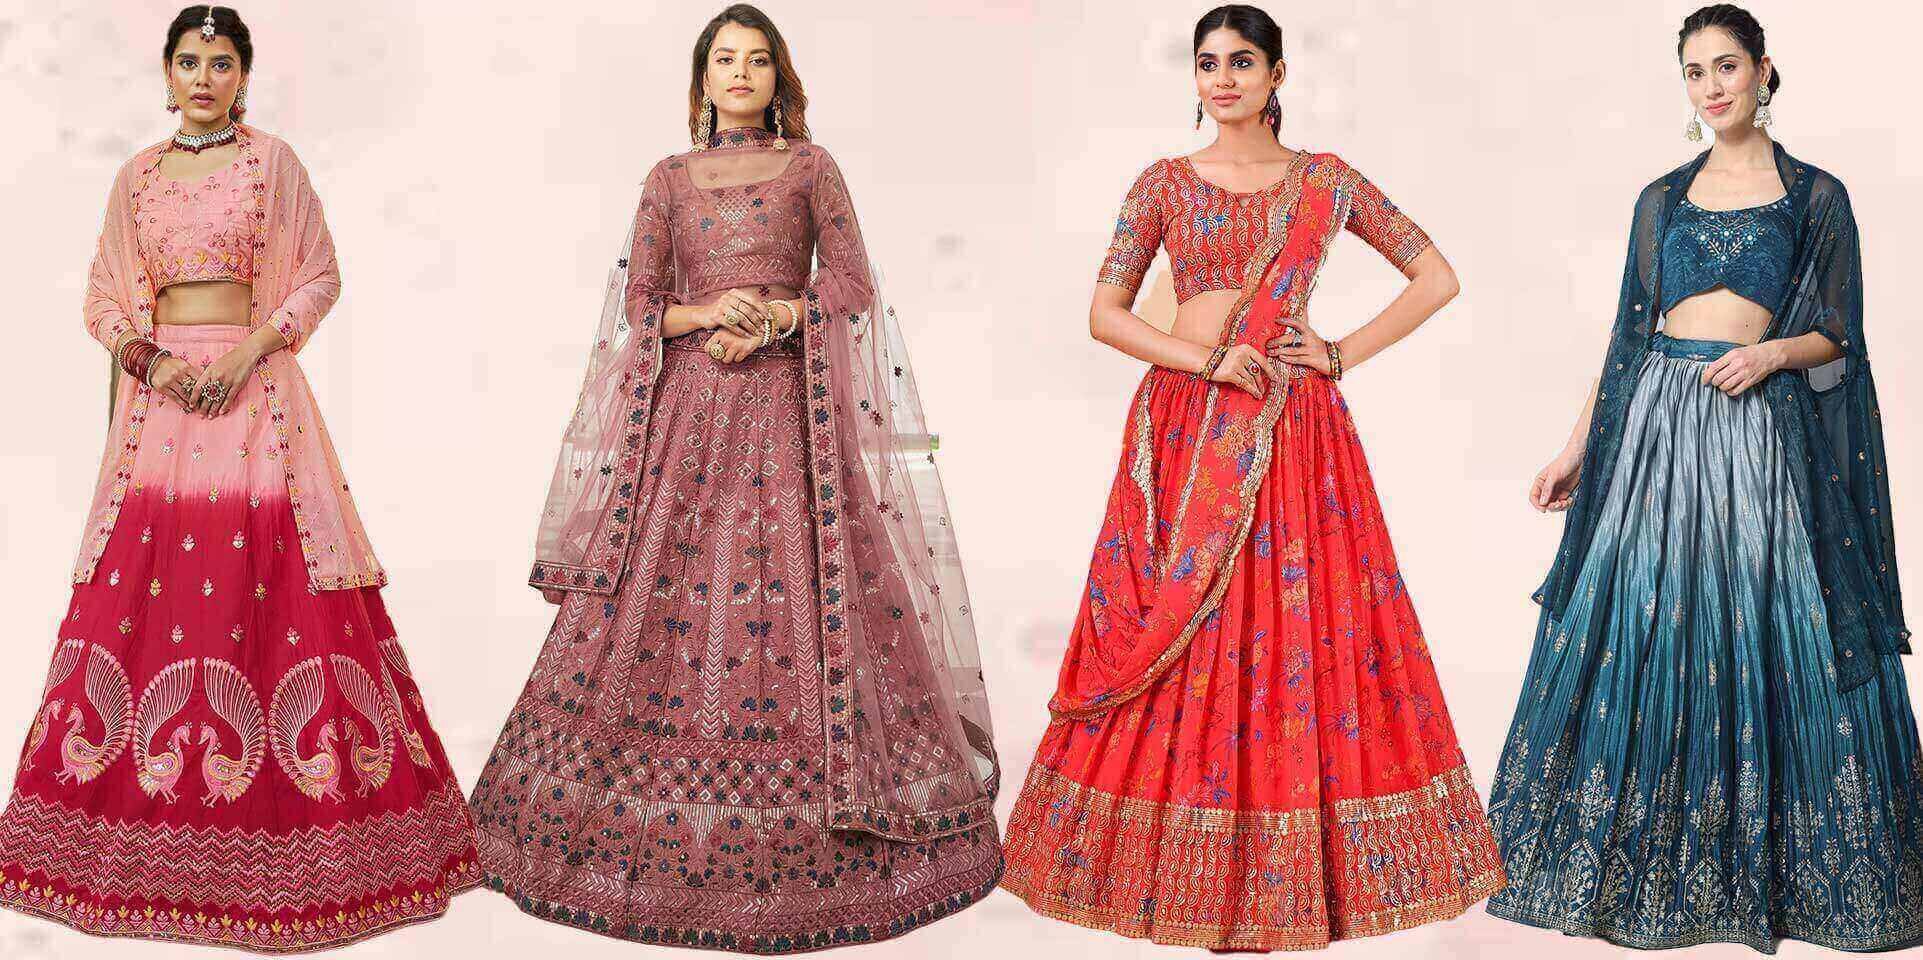 Aawiya 1008 Latest Designs Mehndi Function Lehenga Wedding Wear Collection